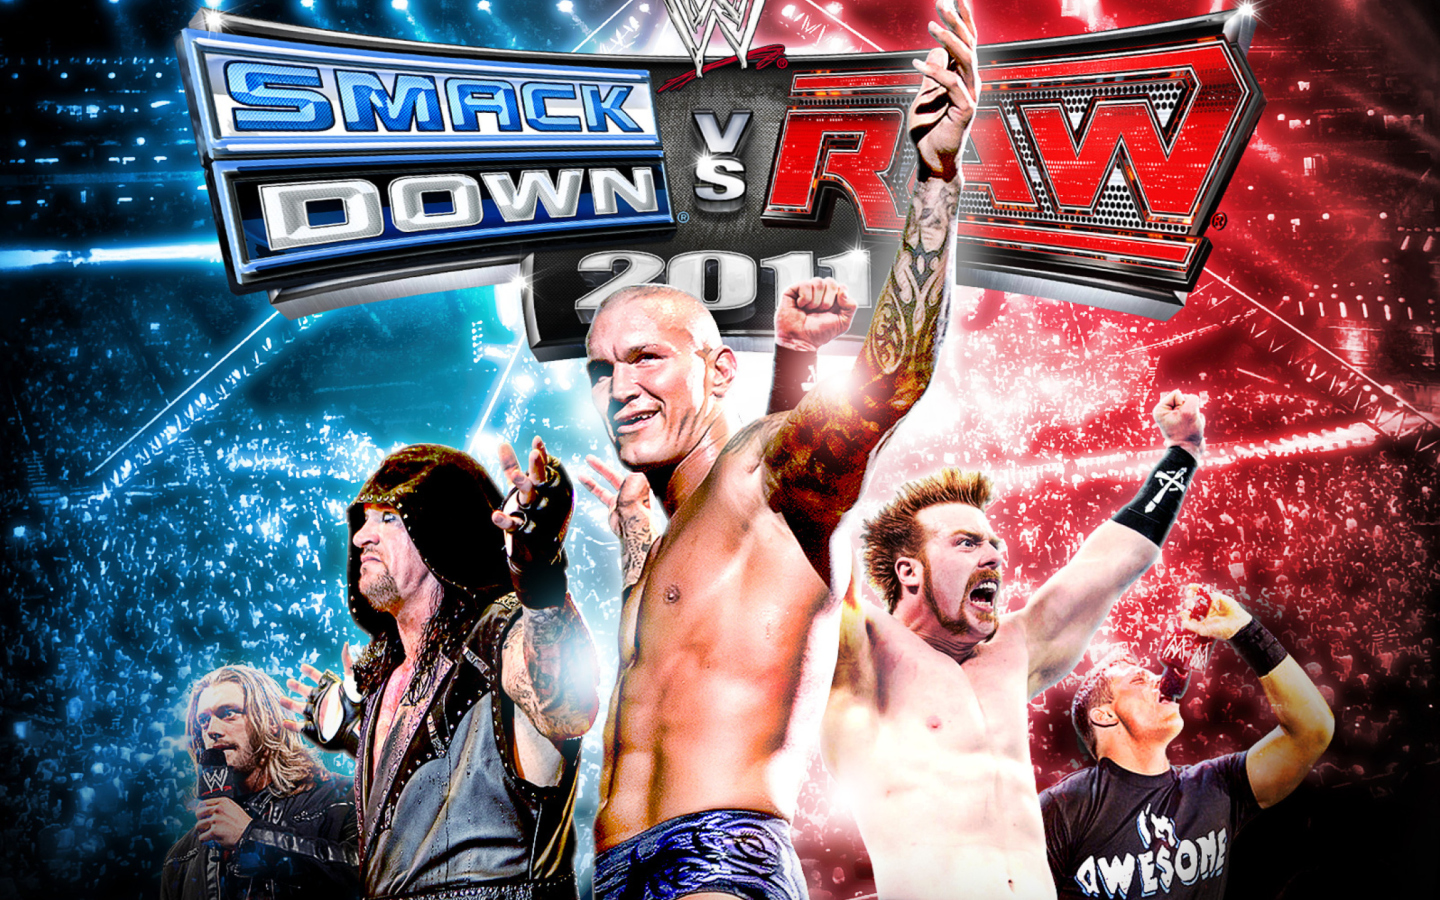 Smackdown Vs Raw - Royal Rumble wallpaper 1440x900